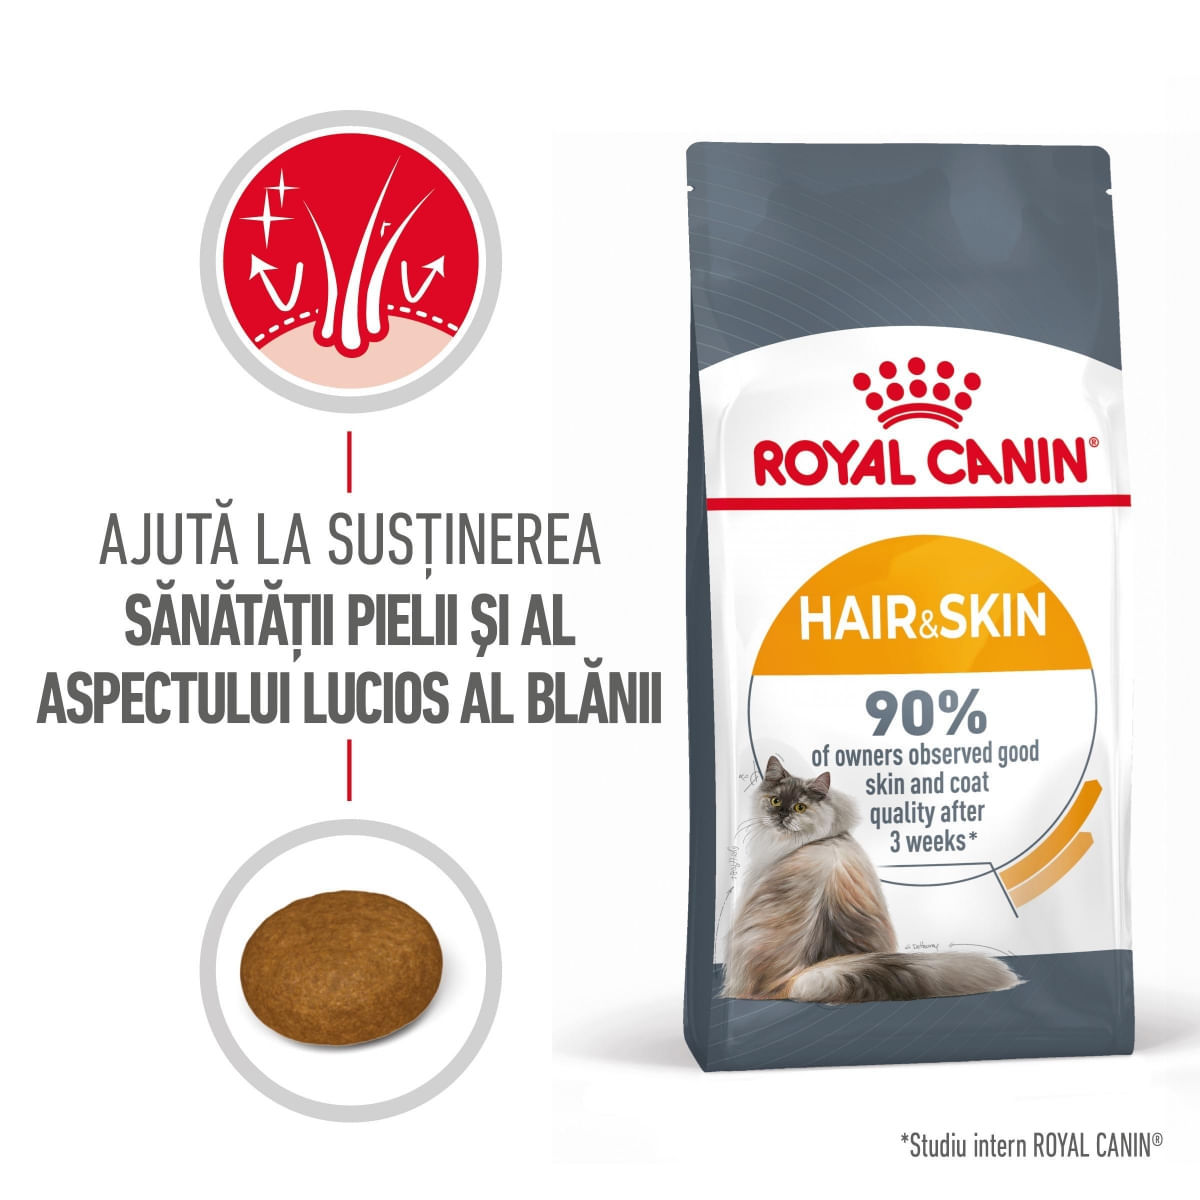 Royal Canin Hair & Skin Care Adult, hrană uscată pisici, piele și blană ROYAL CANIN Feline Care Nutrition Hair&Skin Care, hrană uscată pisici, piele și blană, 10kg